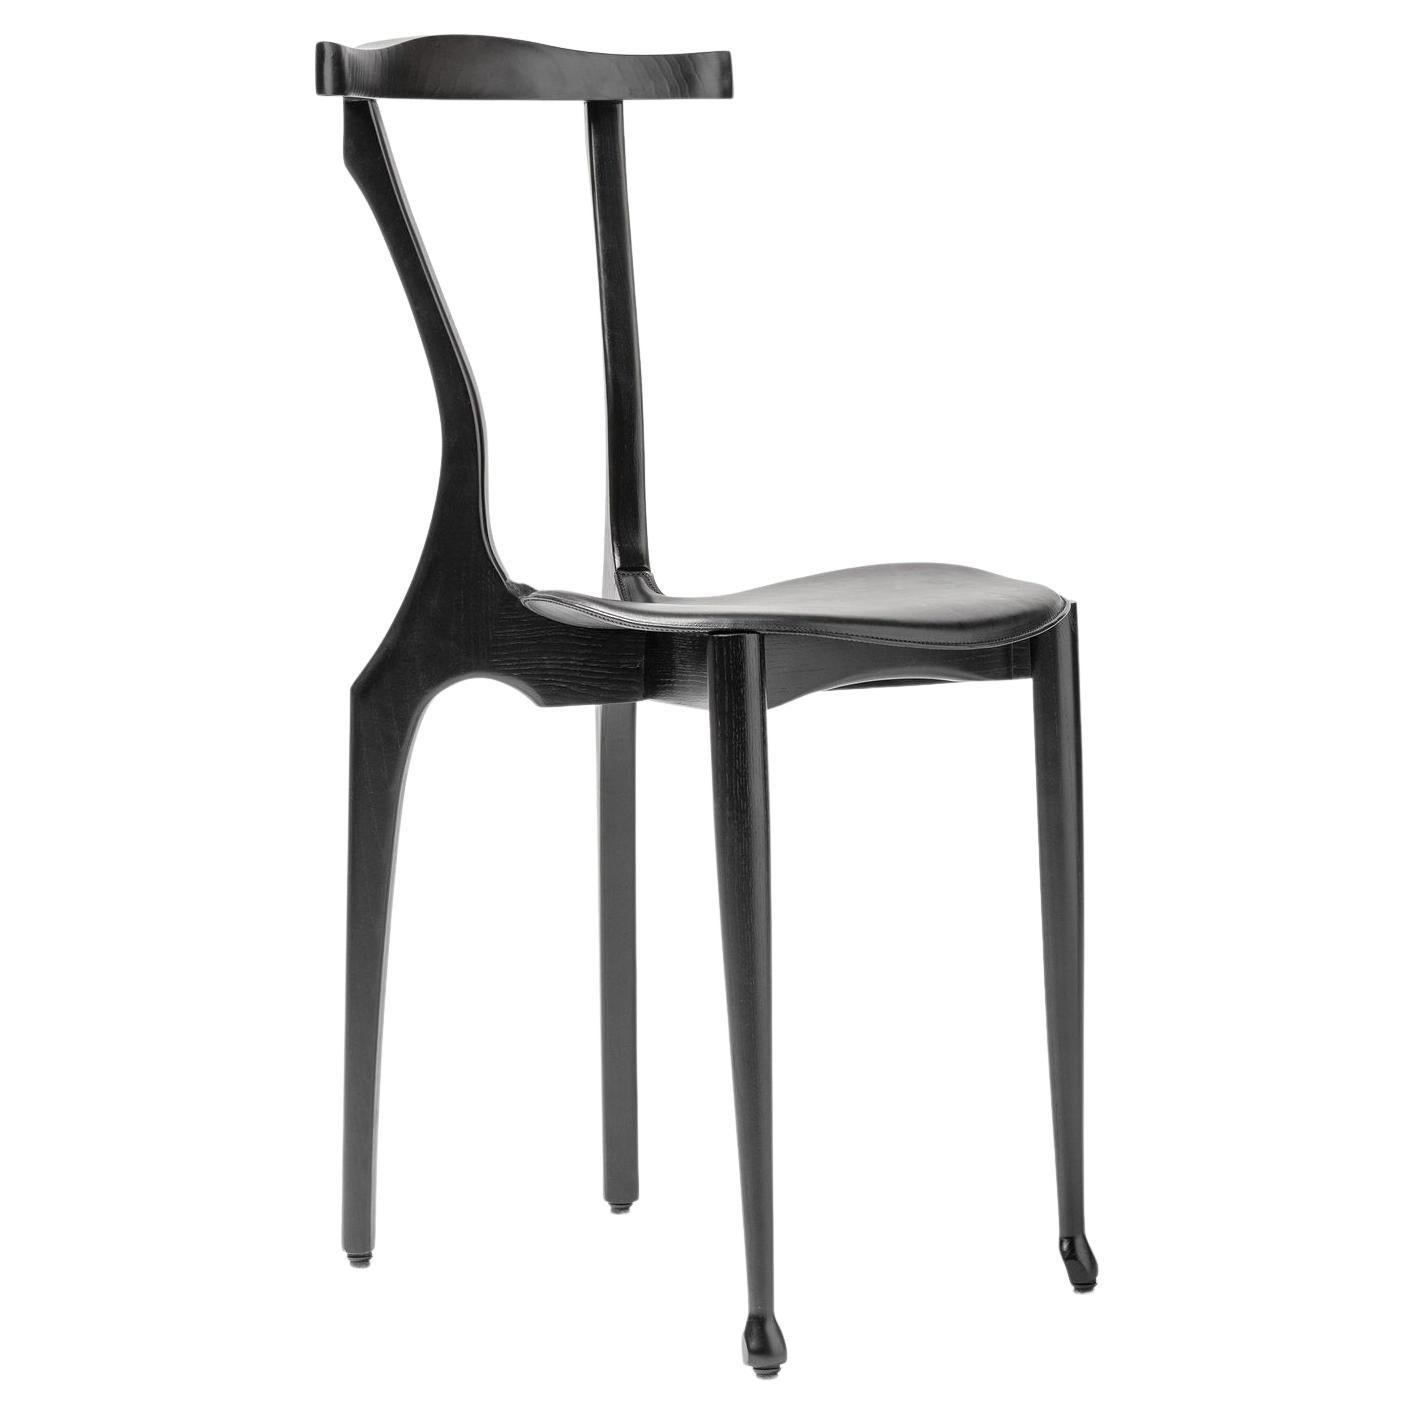 Gaulinetta Black Chair by Oscar Tusquets